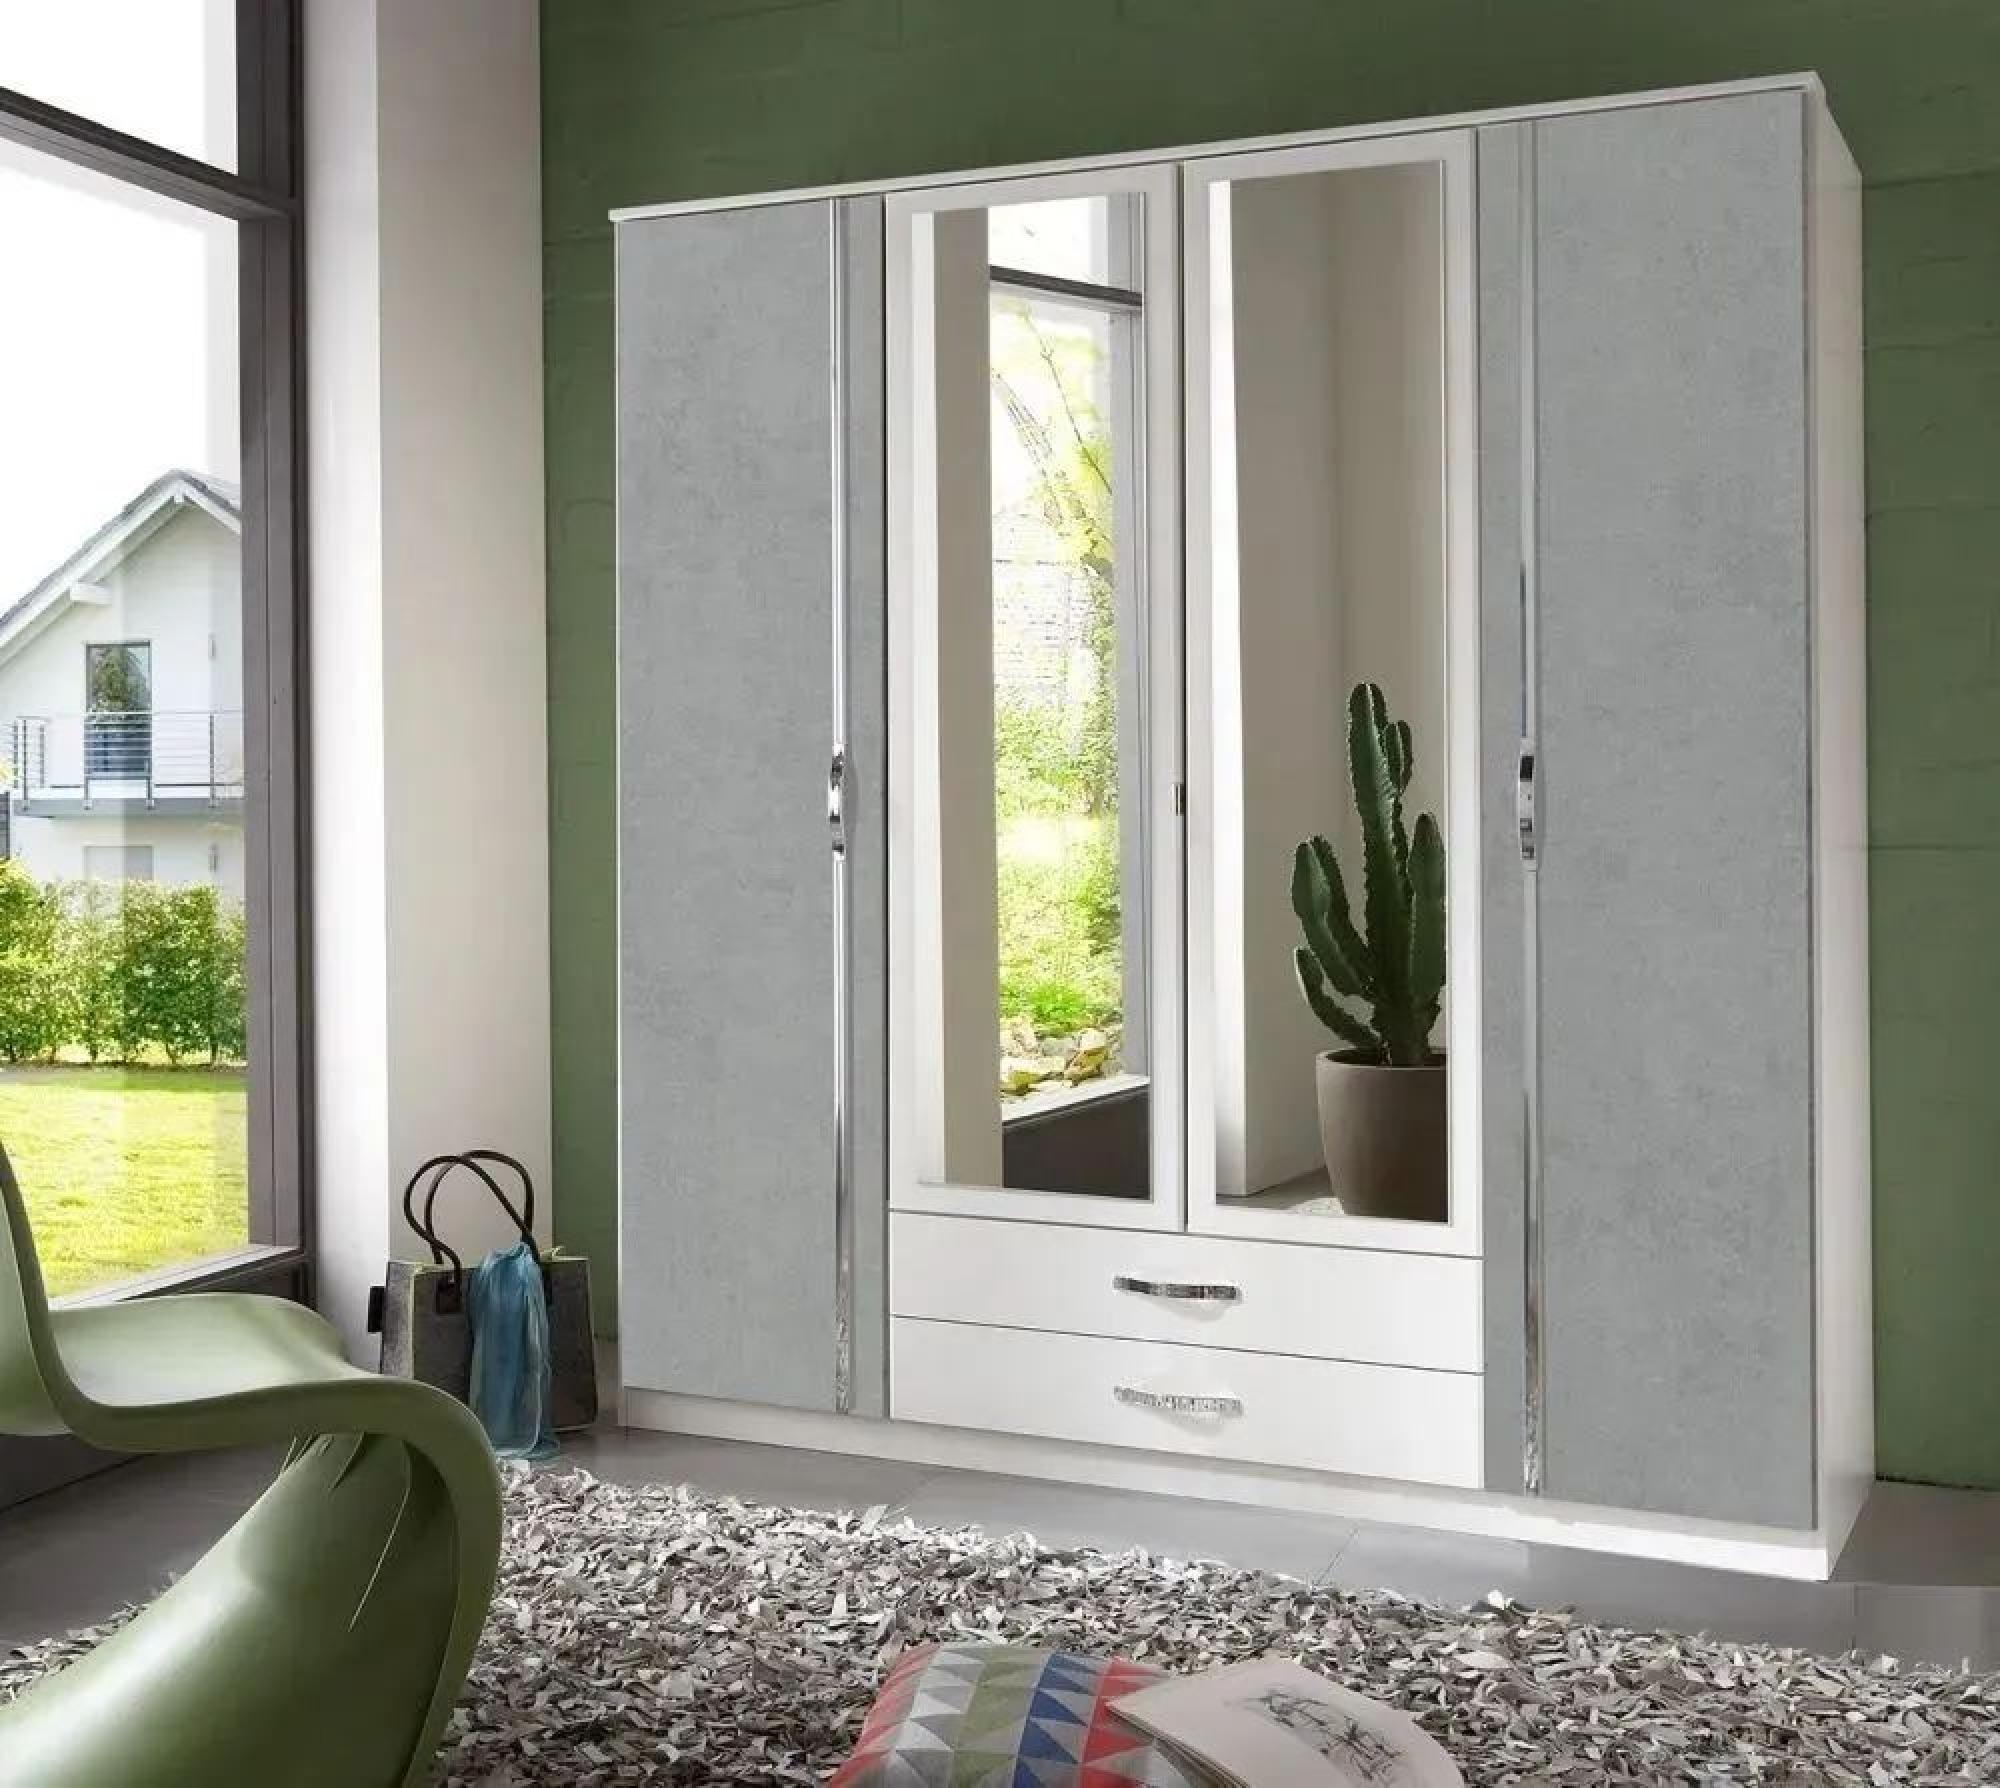 IN STOCK Duo 4 Door Combi Wardrobe, German Made White and Grey Mirrored Front Four Door Wardrobe